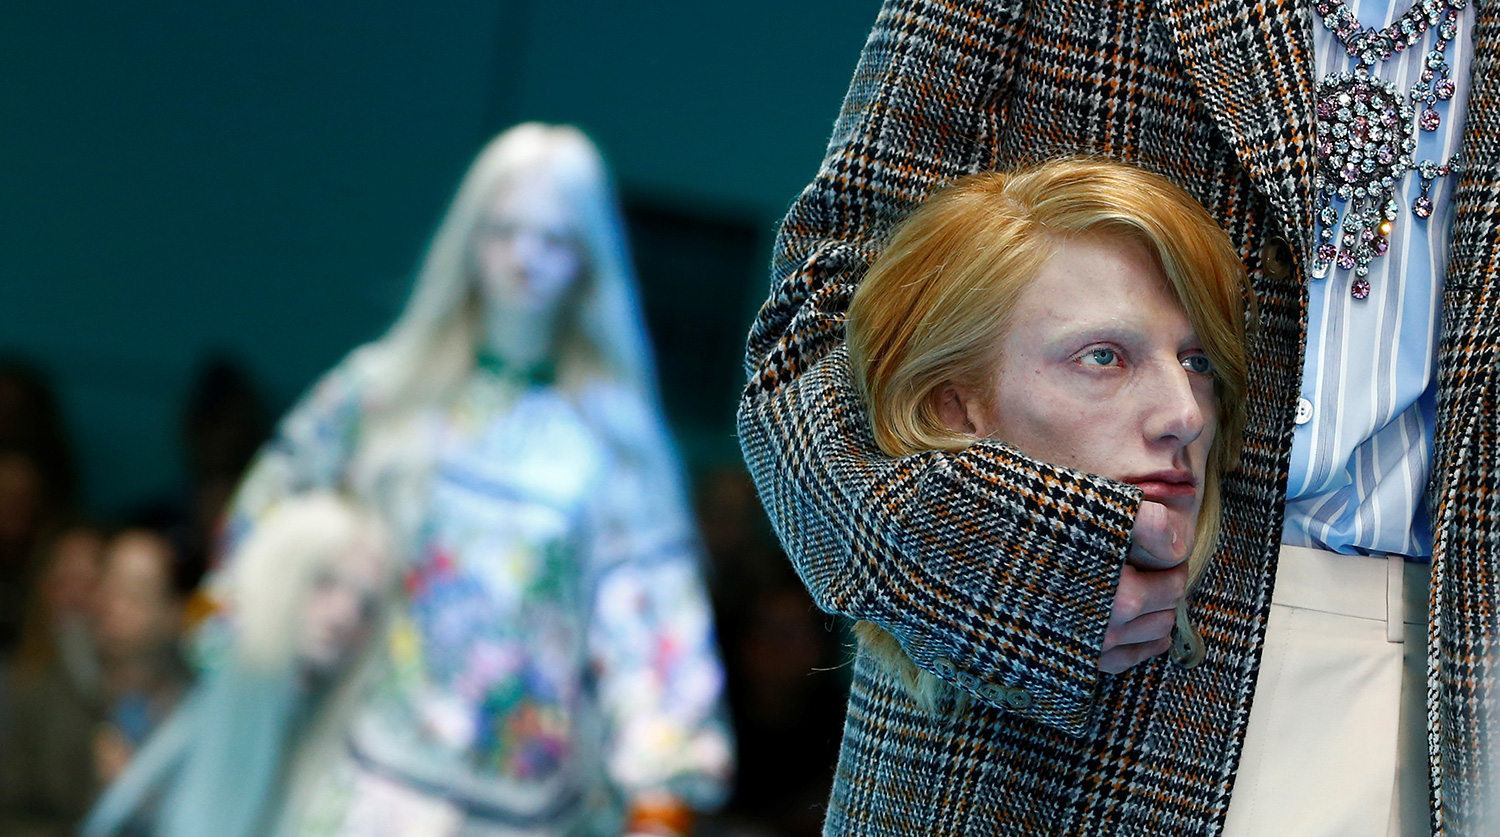 Живые ягнята, фэшн-перфоманс и сумка-мэм: 6 классных показов на Неделе мужской моды в Милане